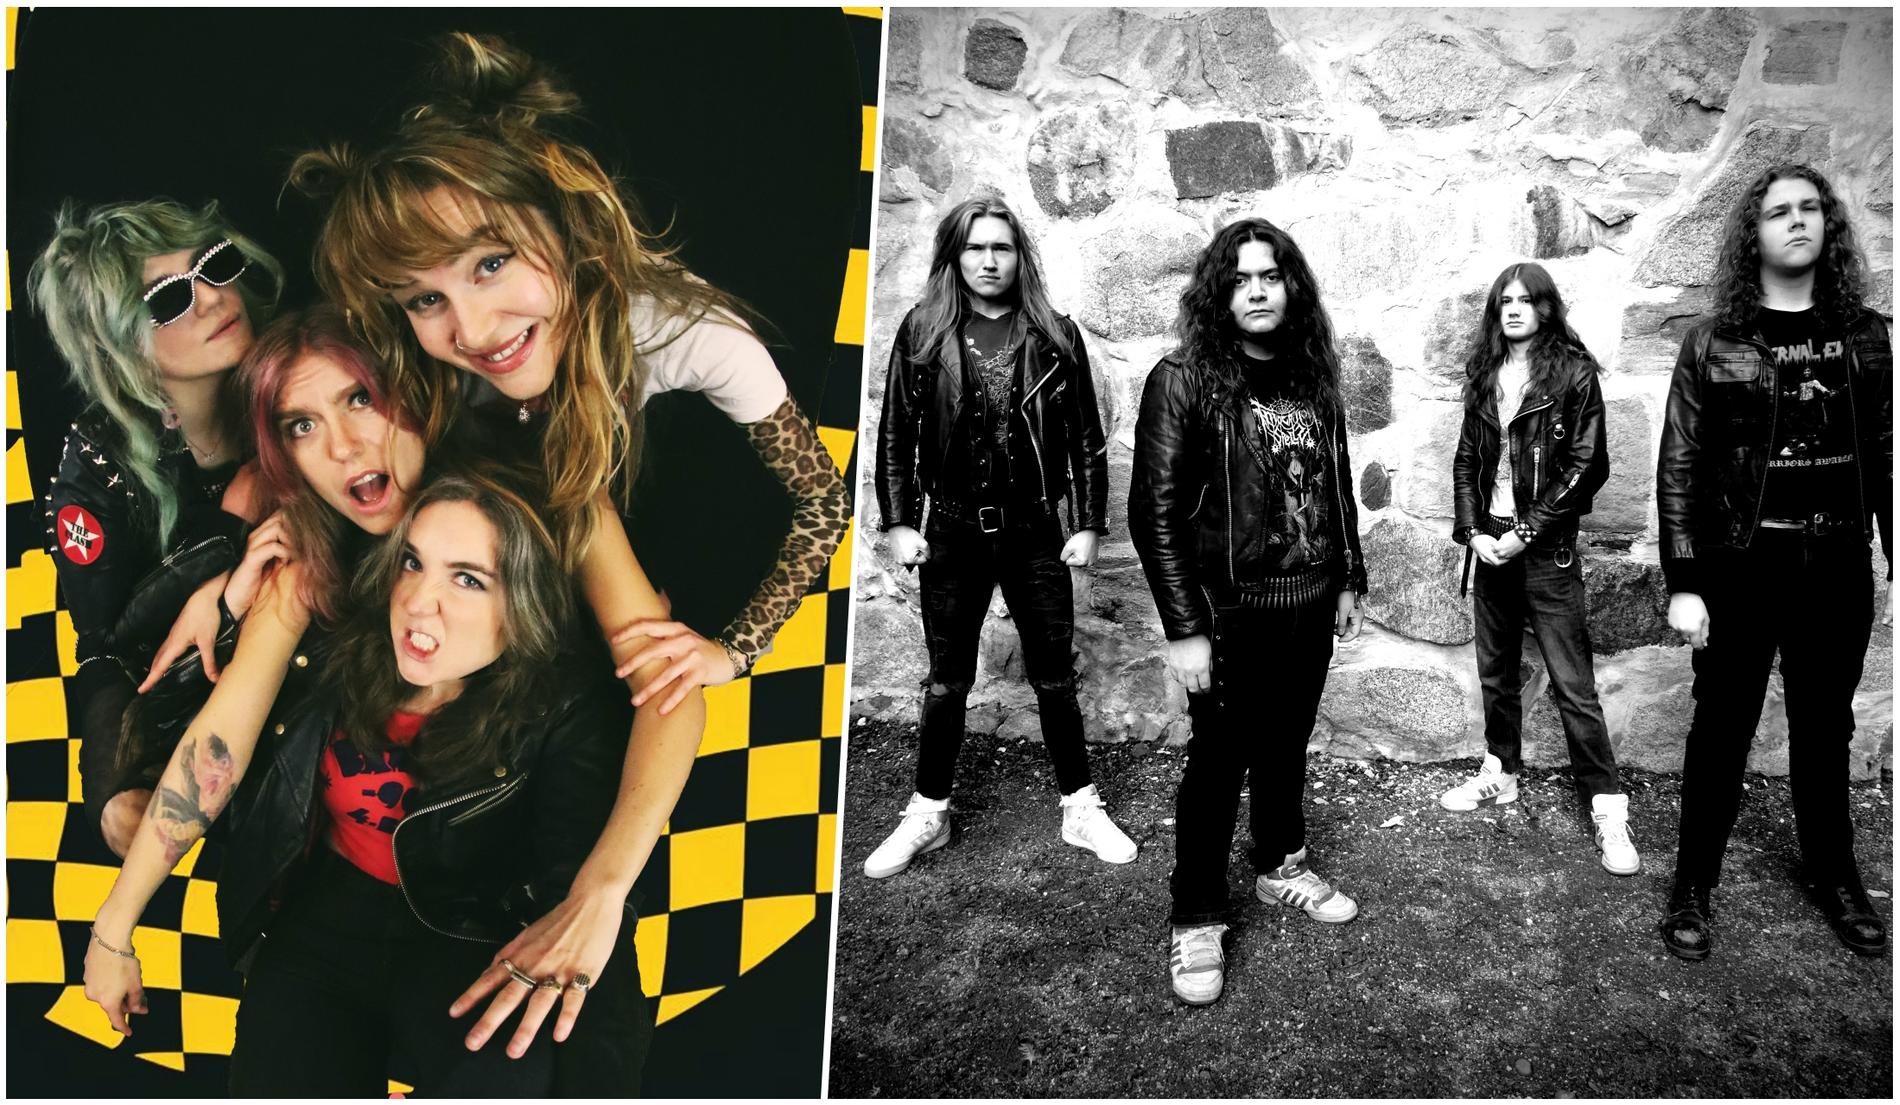 Punkbandet Sodakill och thrash metal-bandet Eternal Evil är två exempel på svenska akter som just nu för den tyngre musiken framåt.